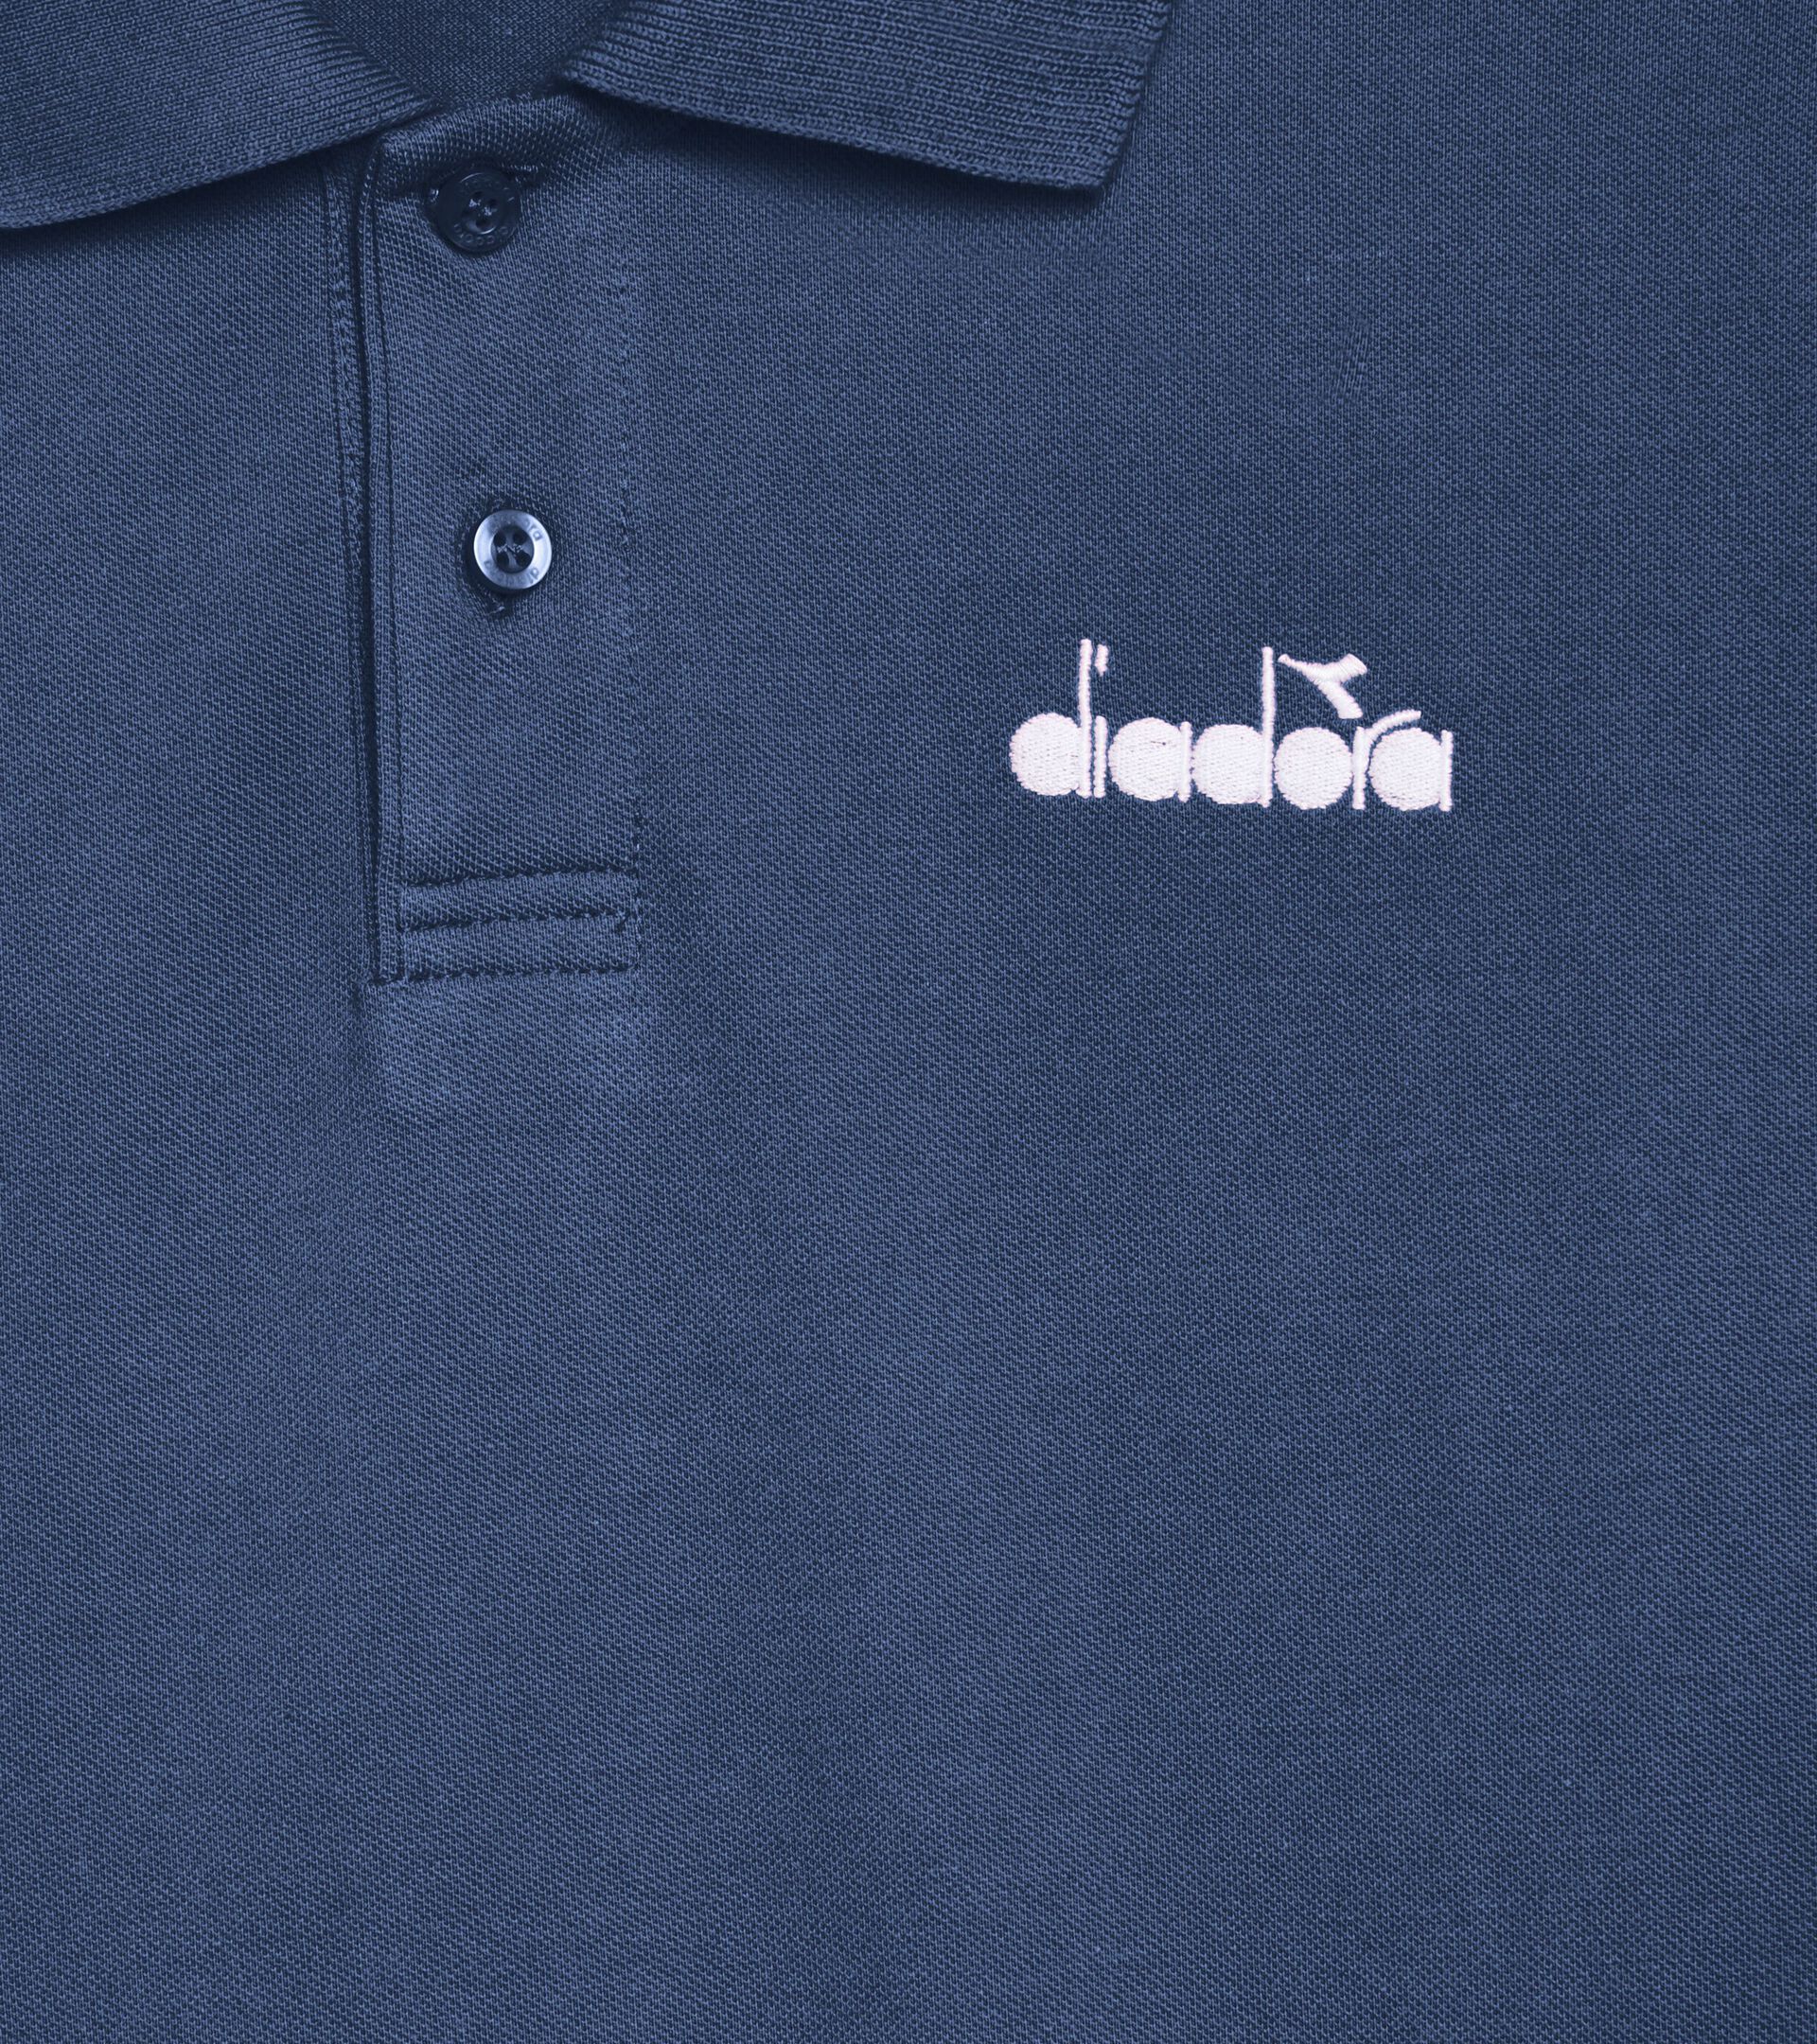 Sporty polo shirt - Made in Italy - Gender Neutral POLO SS LOGO OCEANA - Diadora